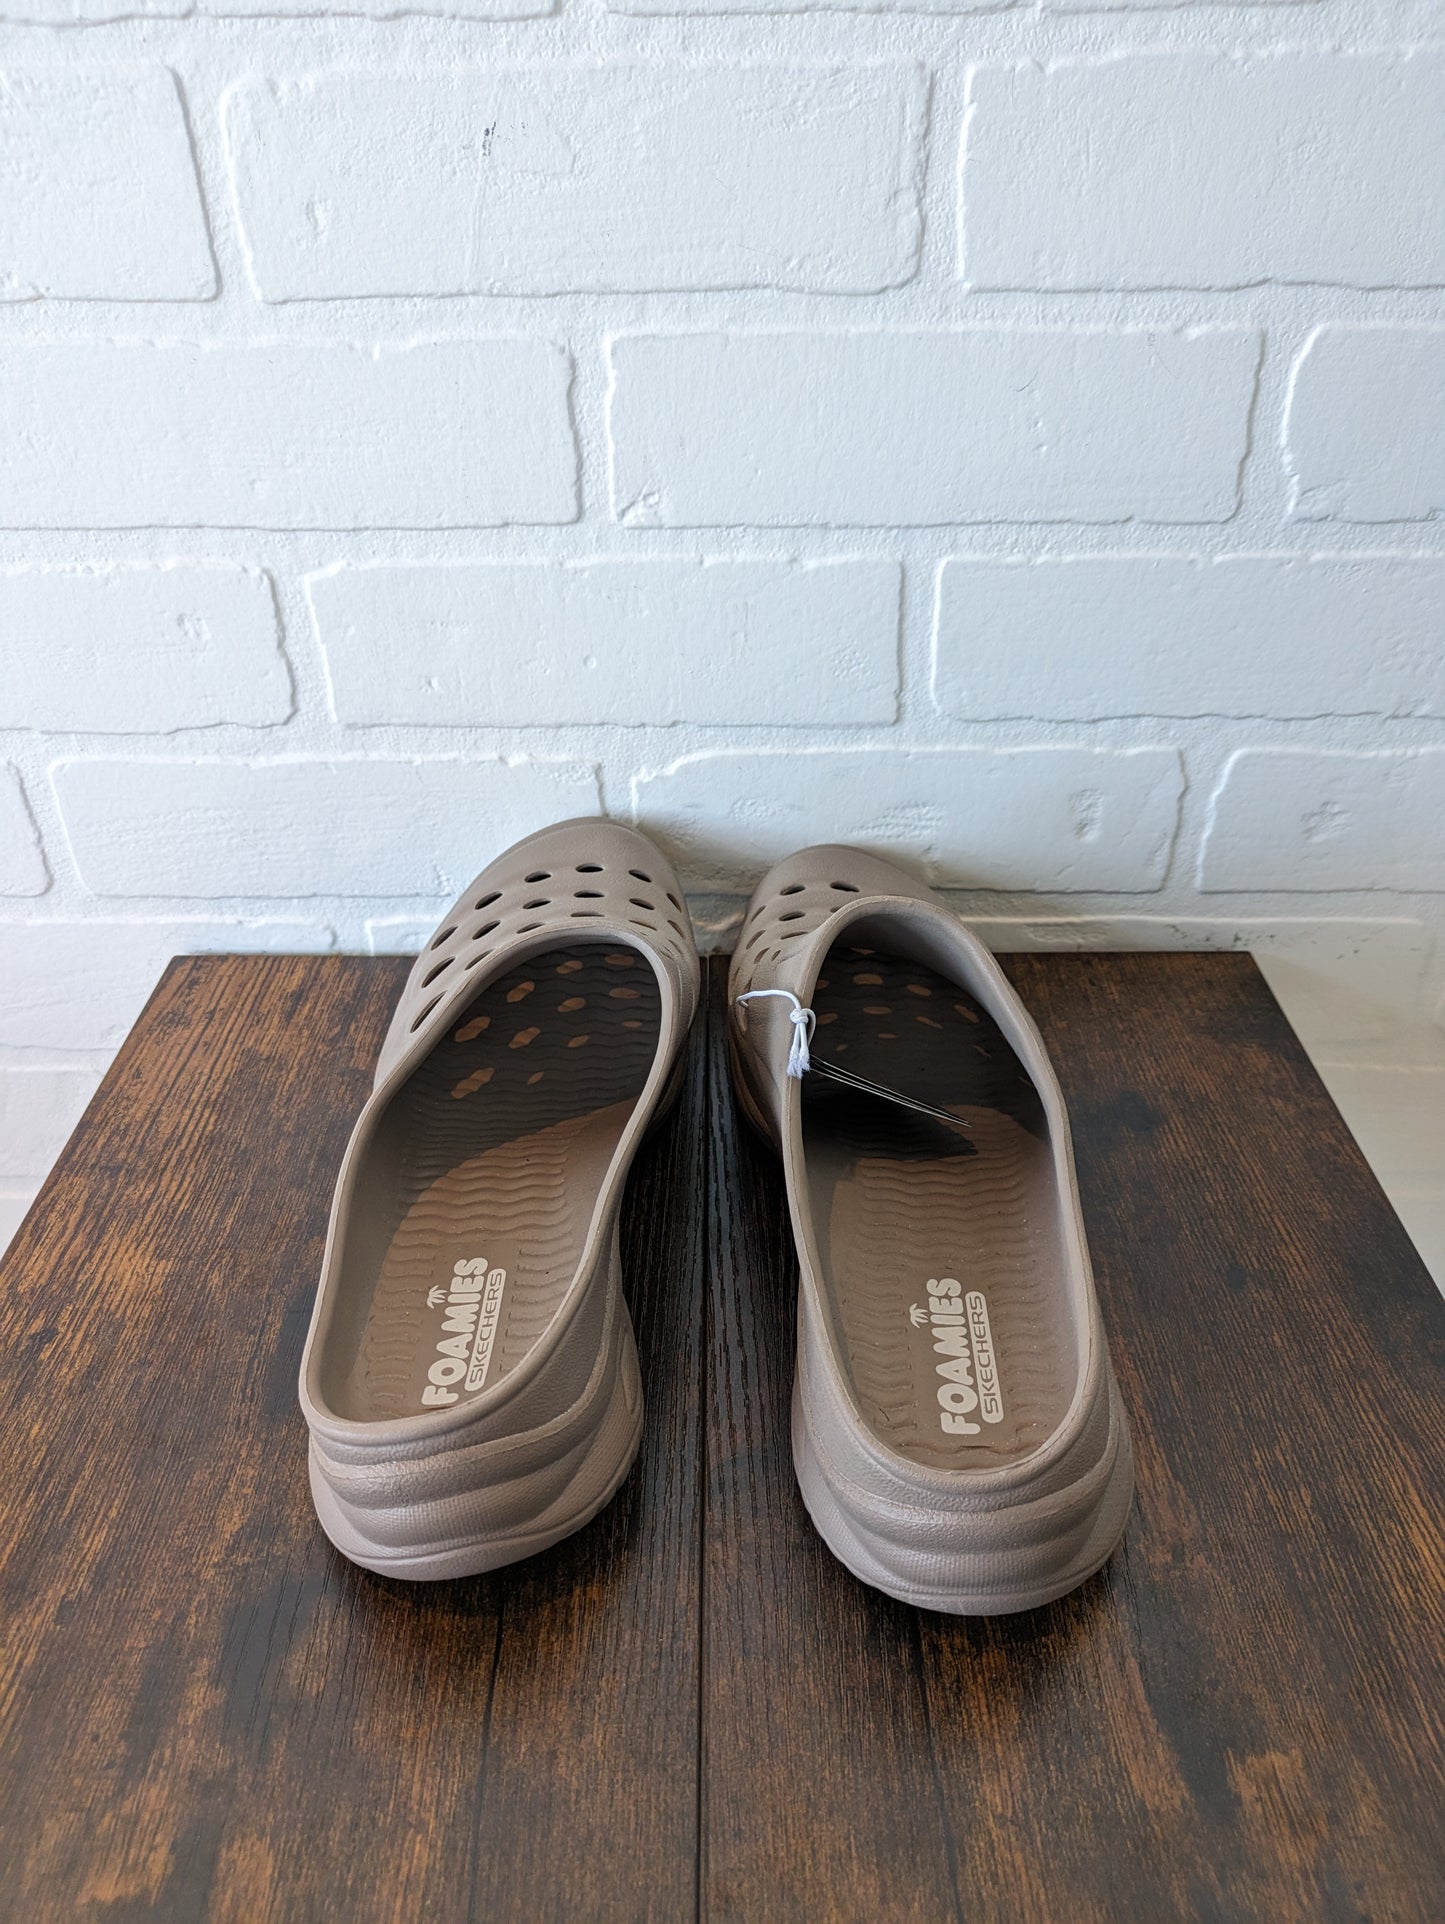 Shoes Flats Mule & Slide By Skechers  Size: 9